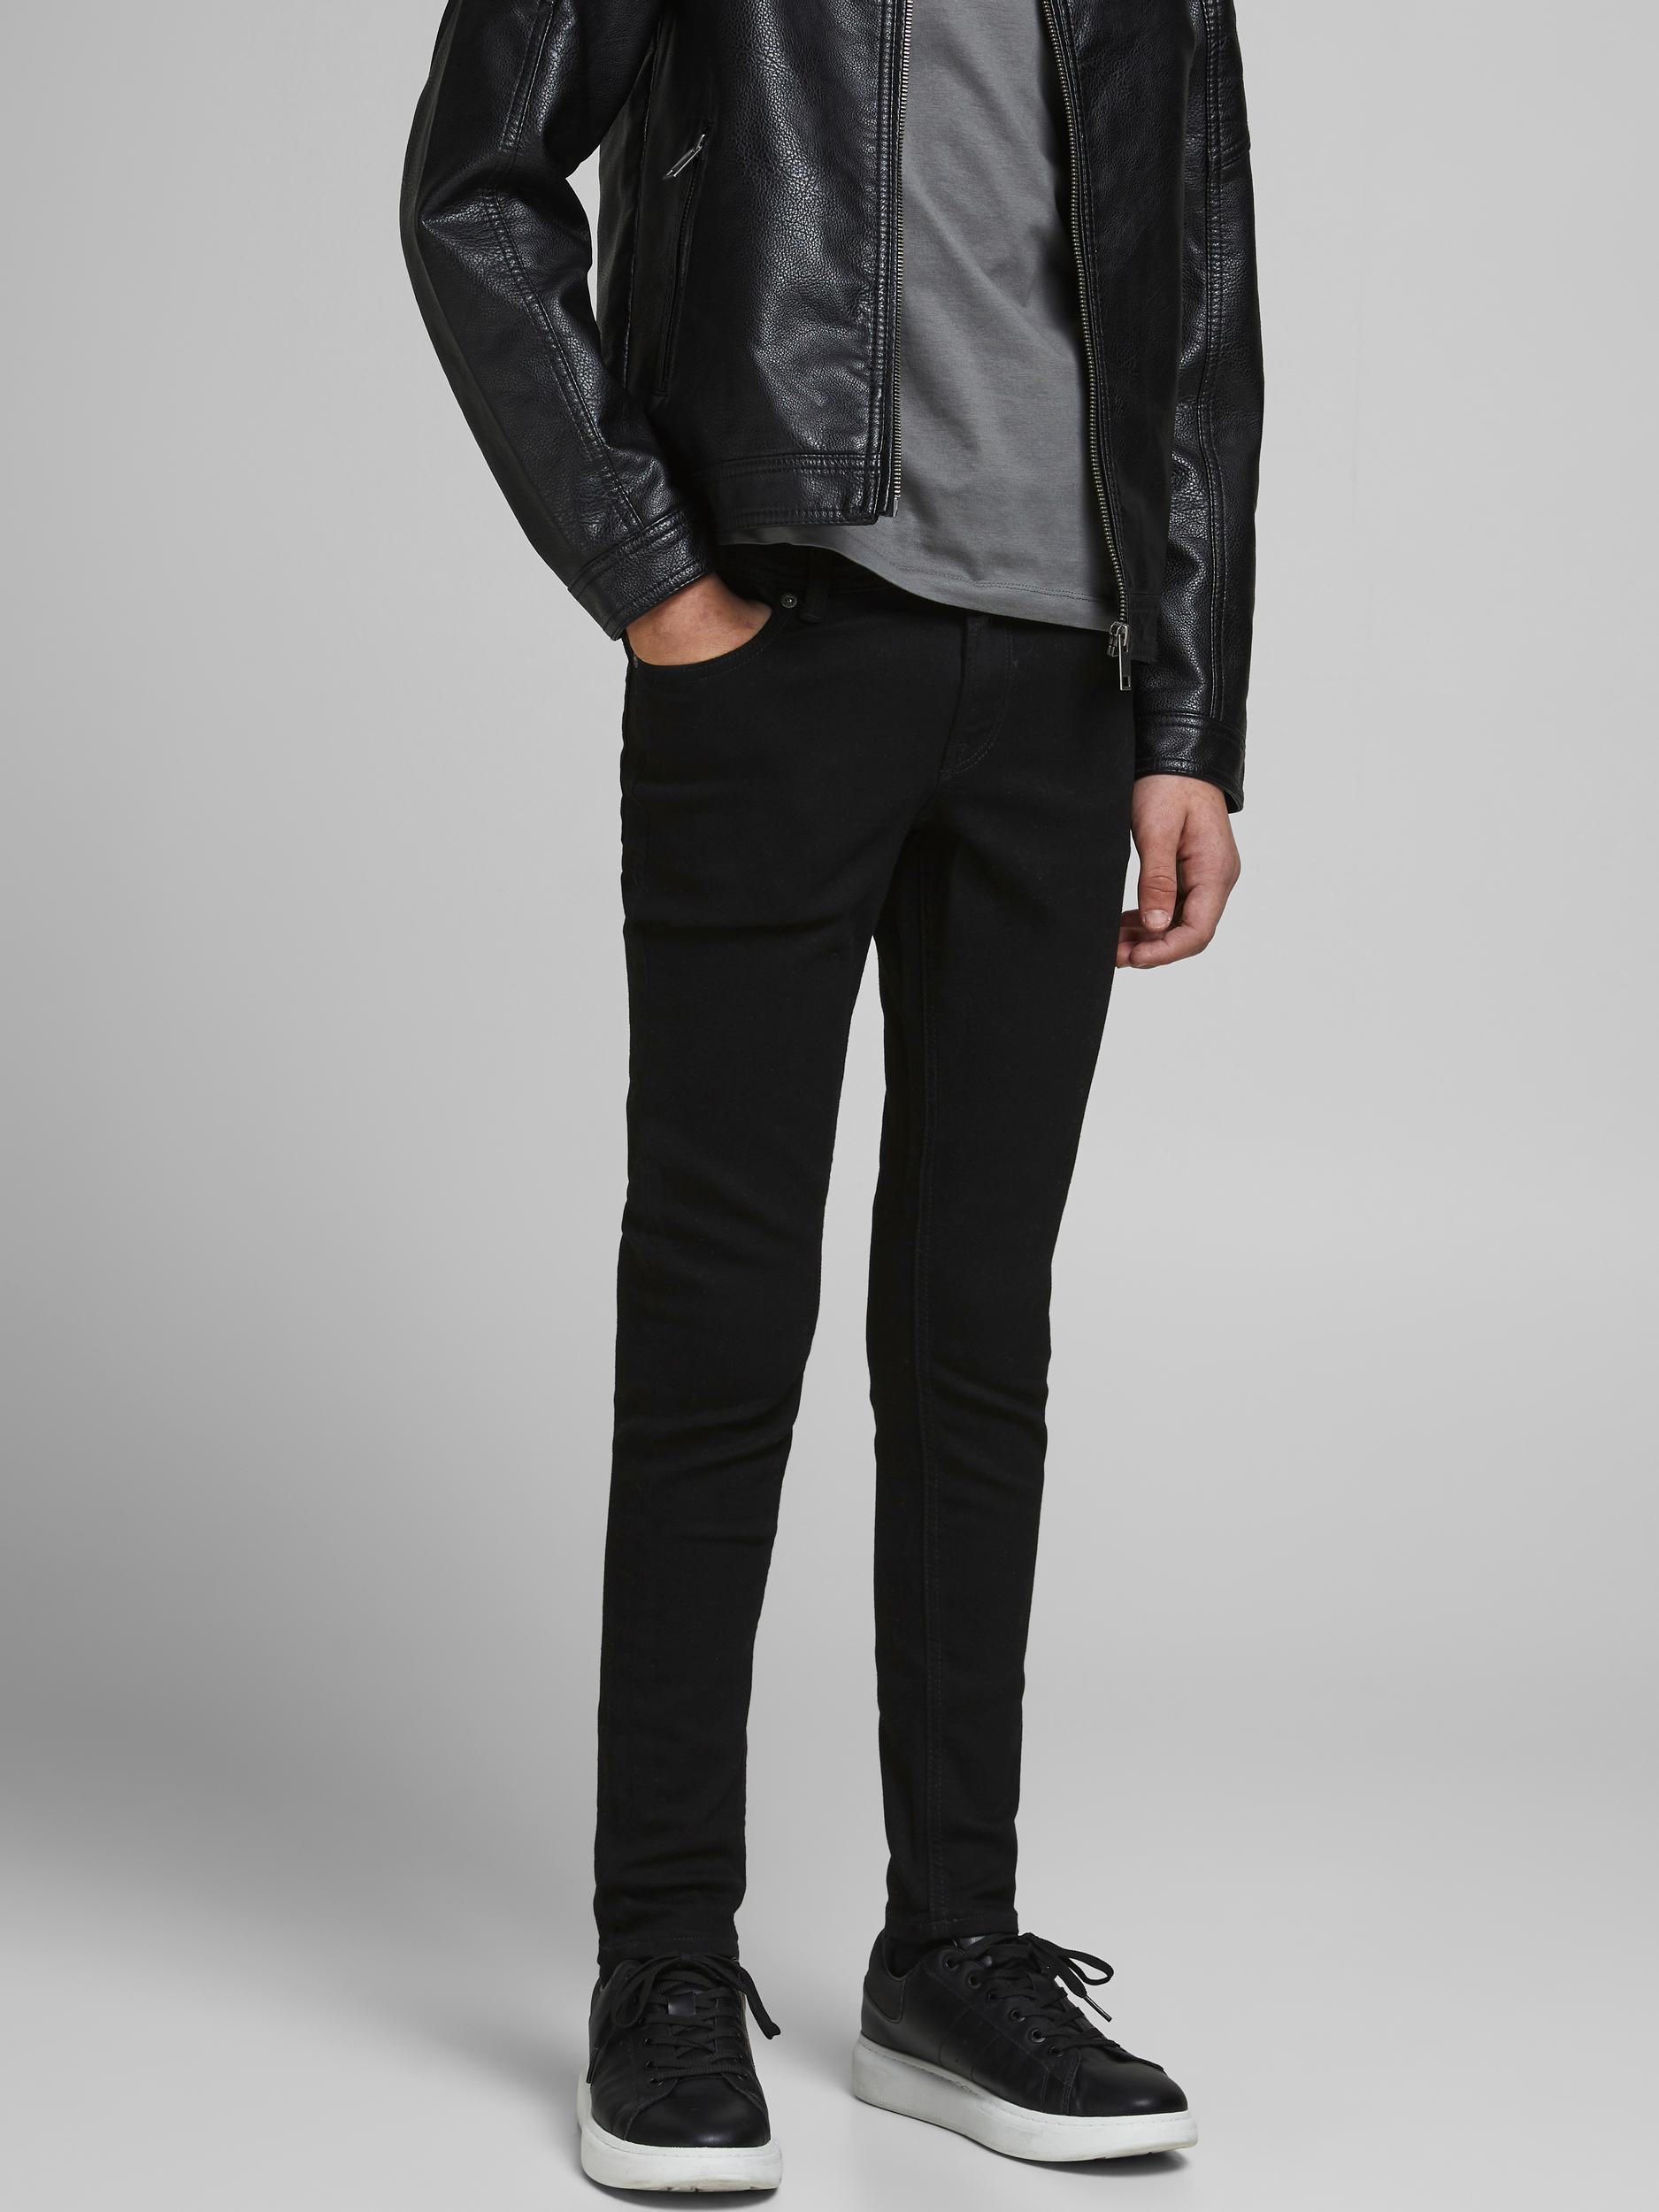  Liam 829 Jeans, Black Denim, 146 cm